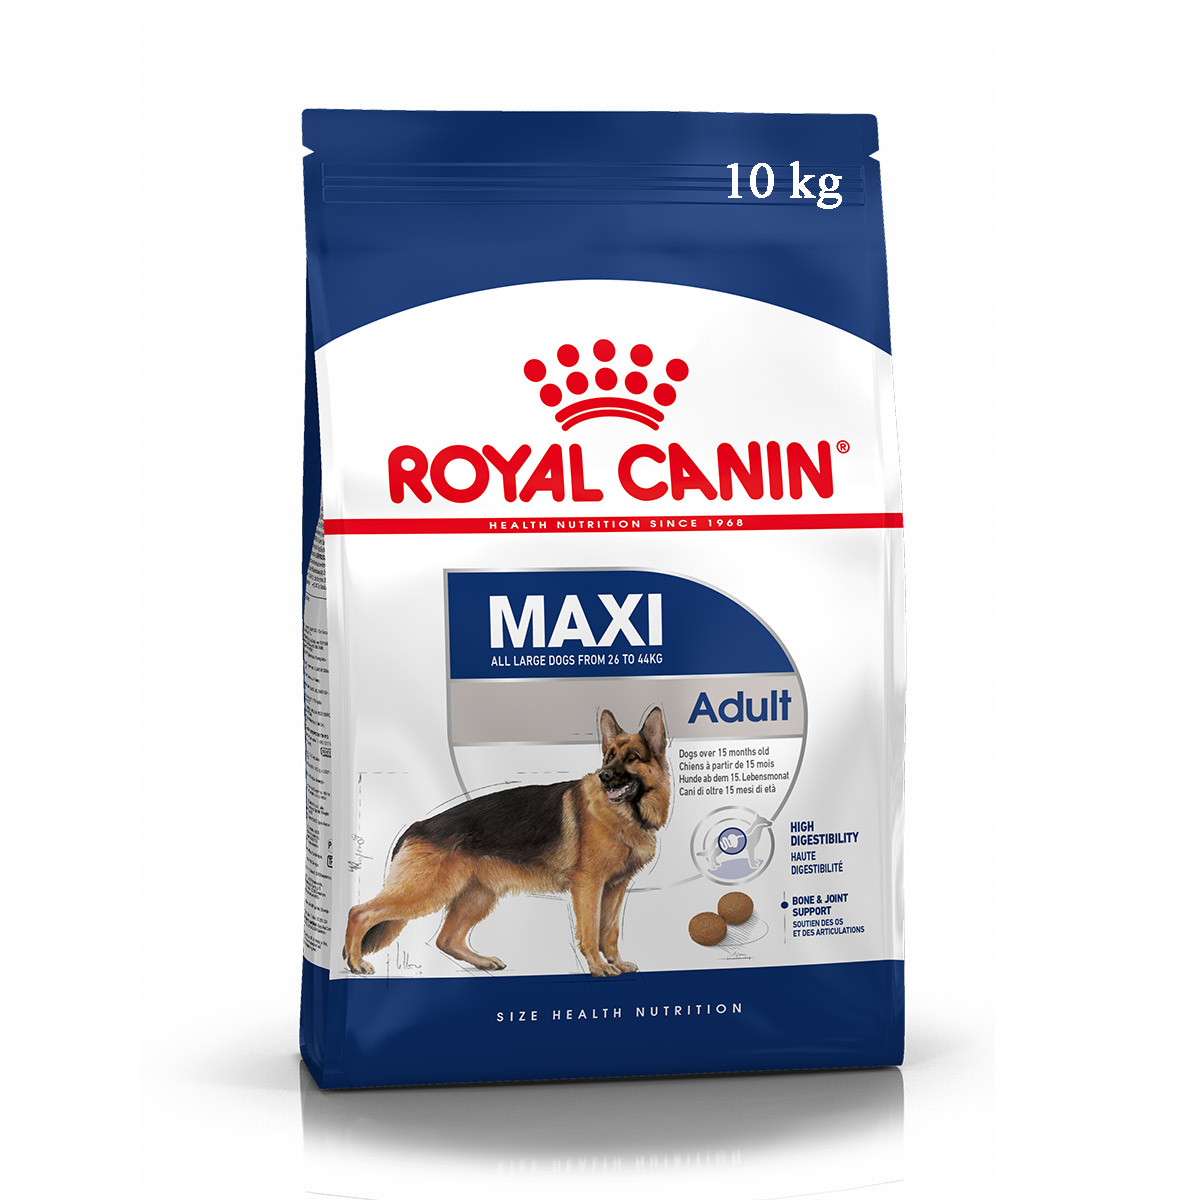 Royal canin maxi adult - Thức ăn cho chó trưởng thành cỡ lớn 10kg